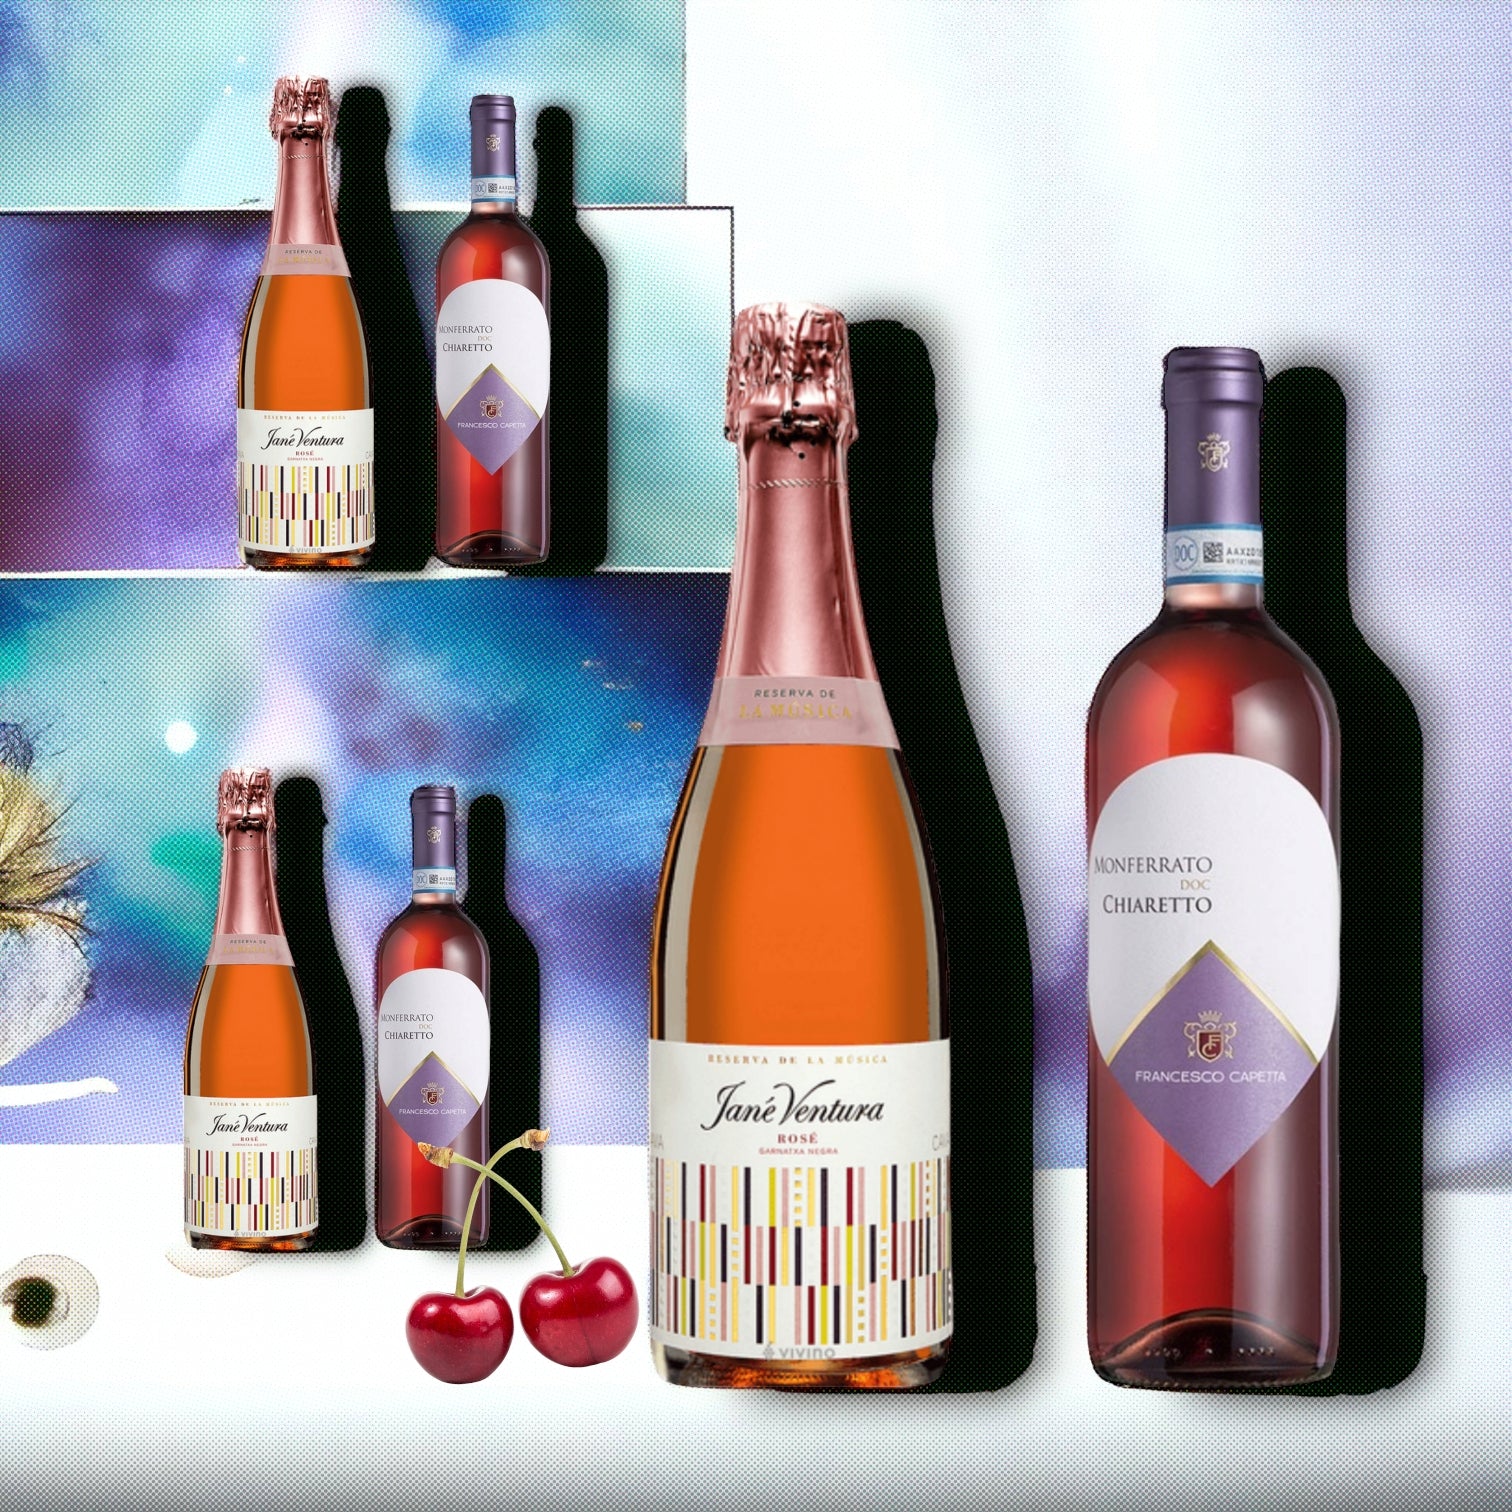 Jané Ventura Reserva de la Música Rosé 2018 + Capetta Monferrato DOC Chiaretto Francesco Sparkling Lillion Wine Offer special offer